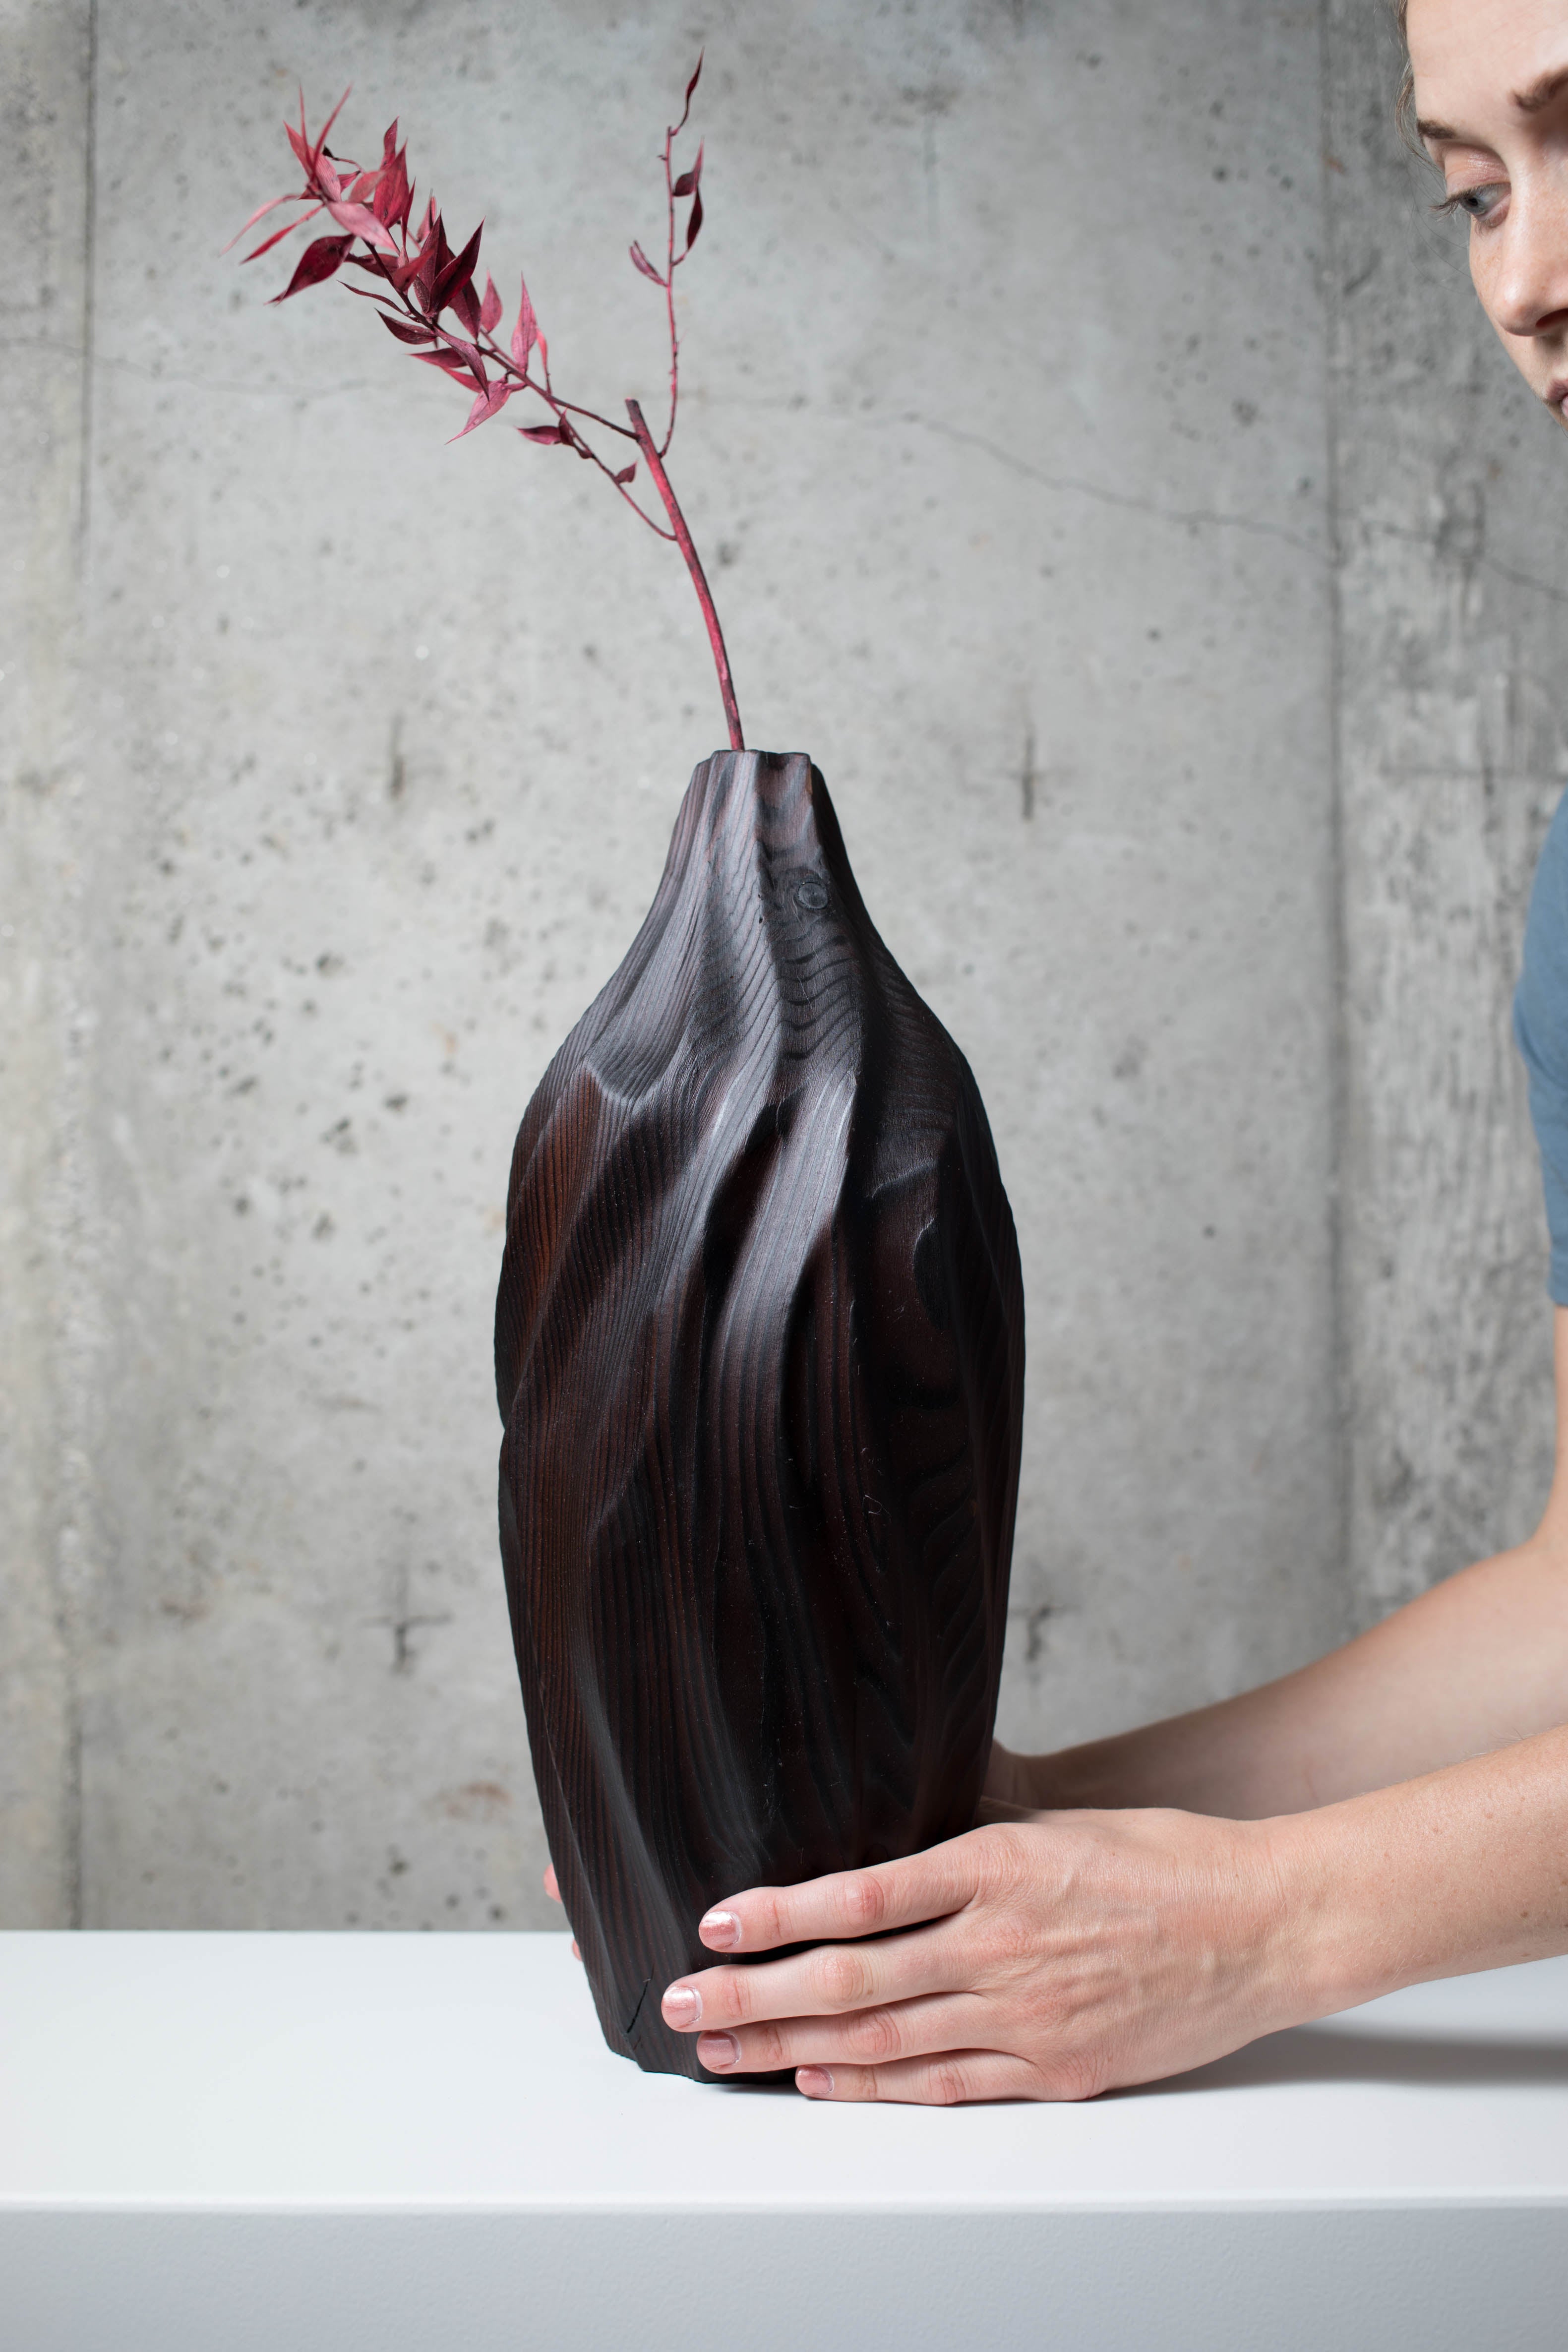 wood vase ideas